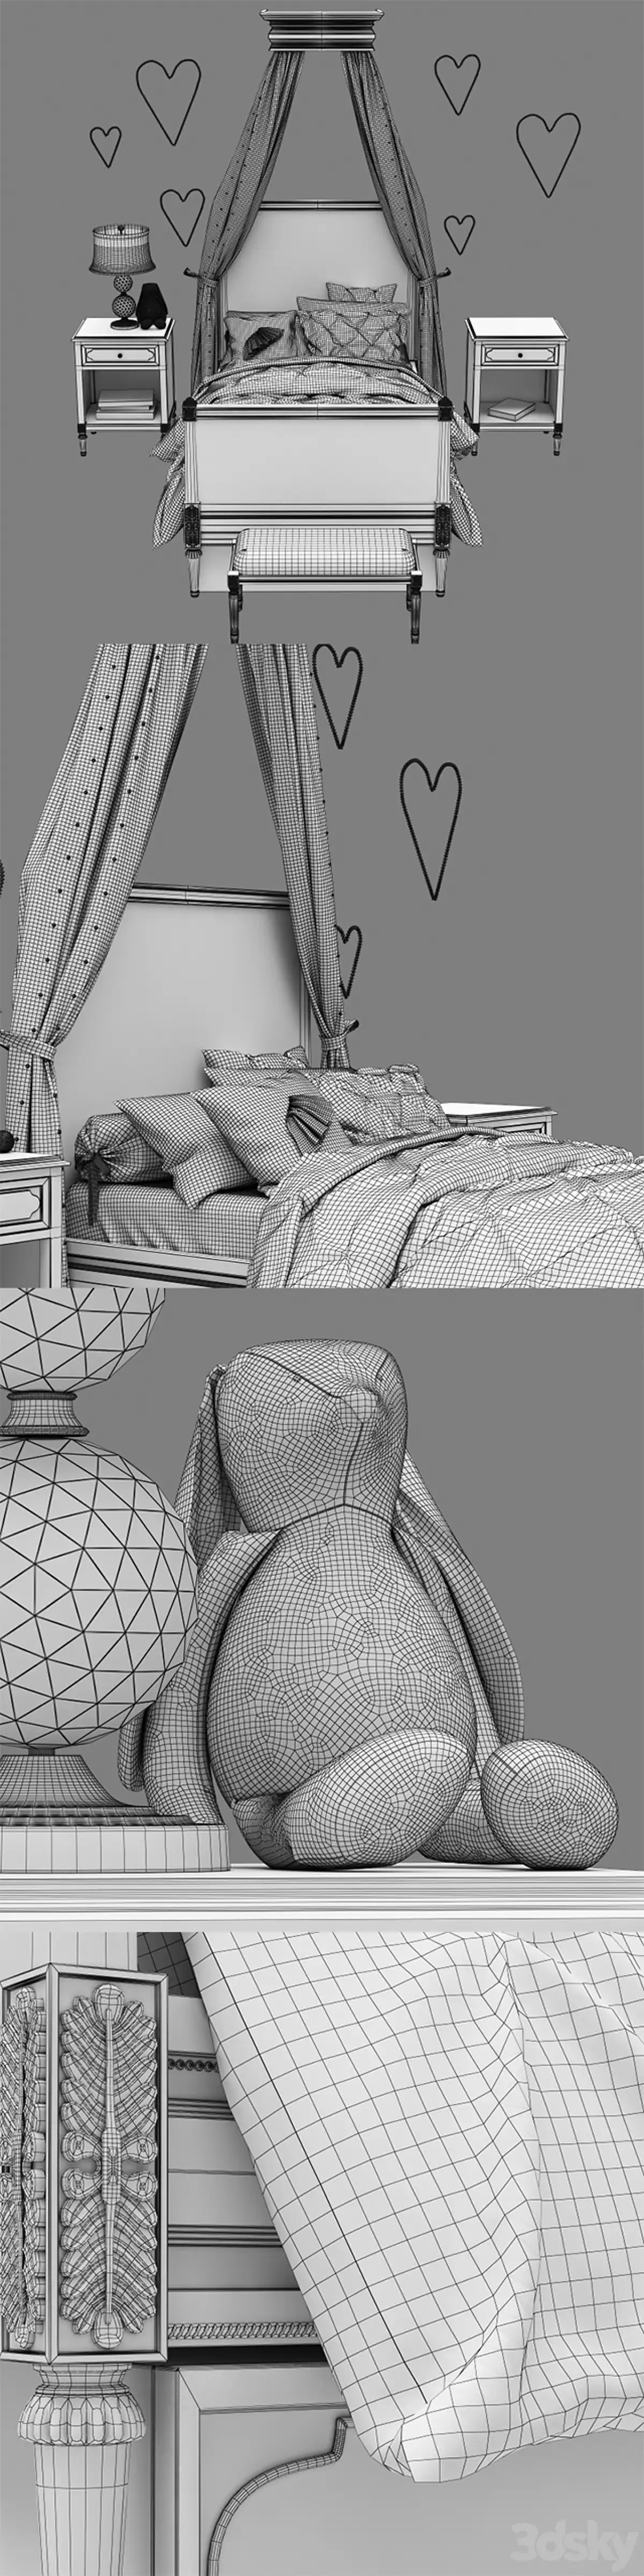 مدل سه بعدی تخت خواب کودک کلاسیک 2 - 6